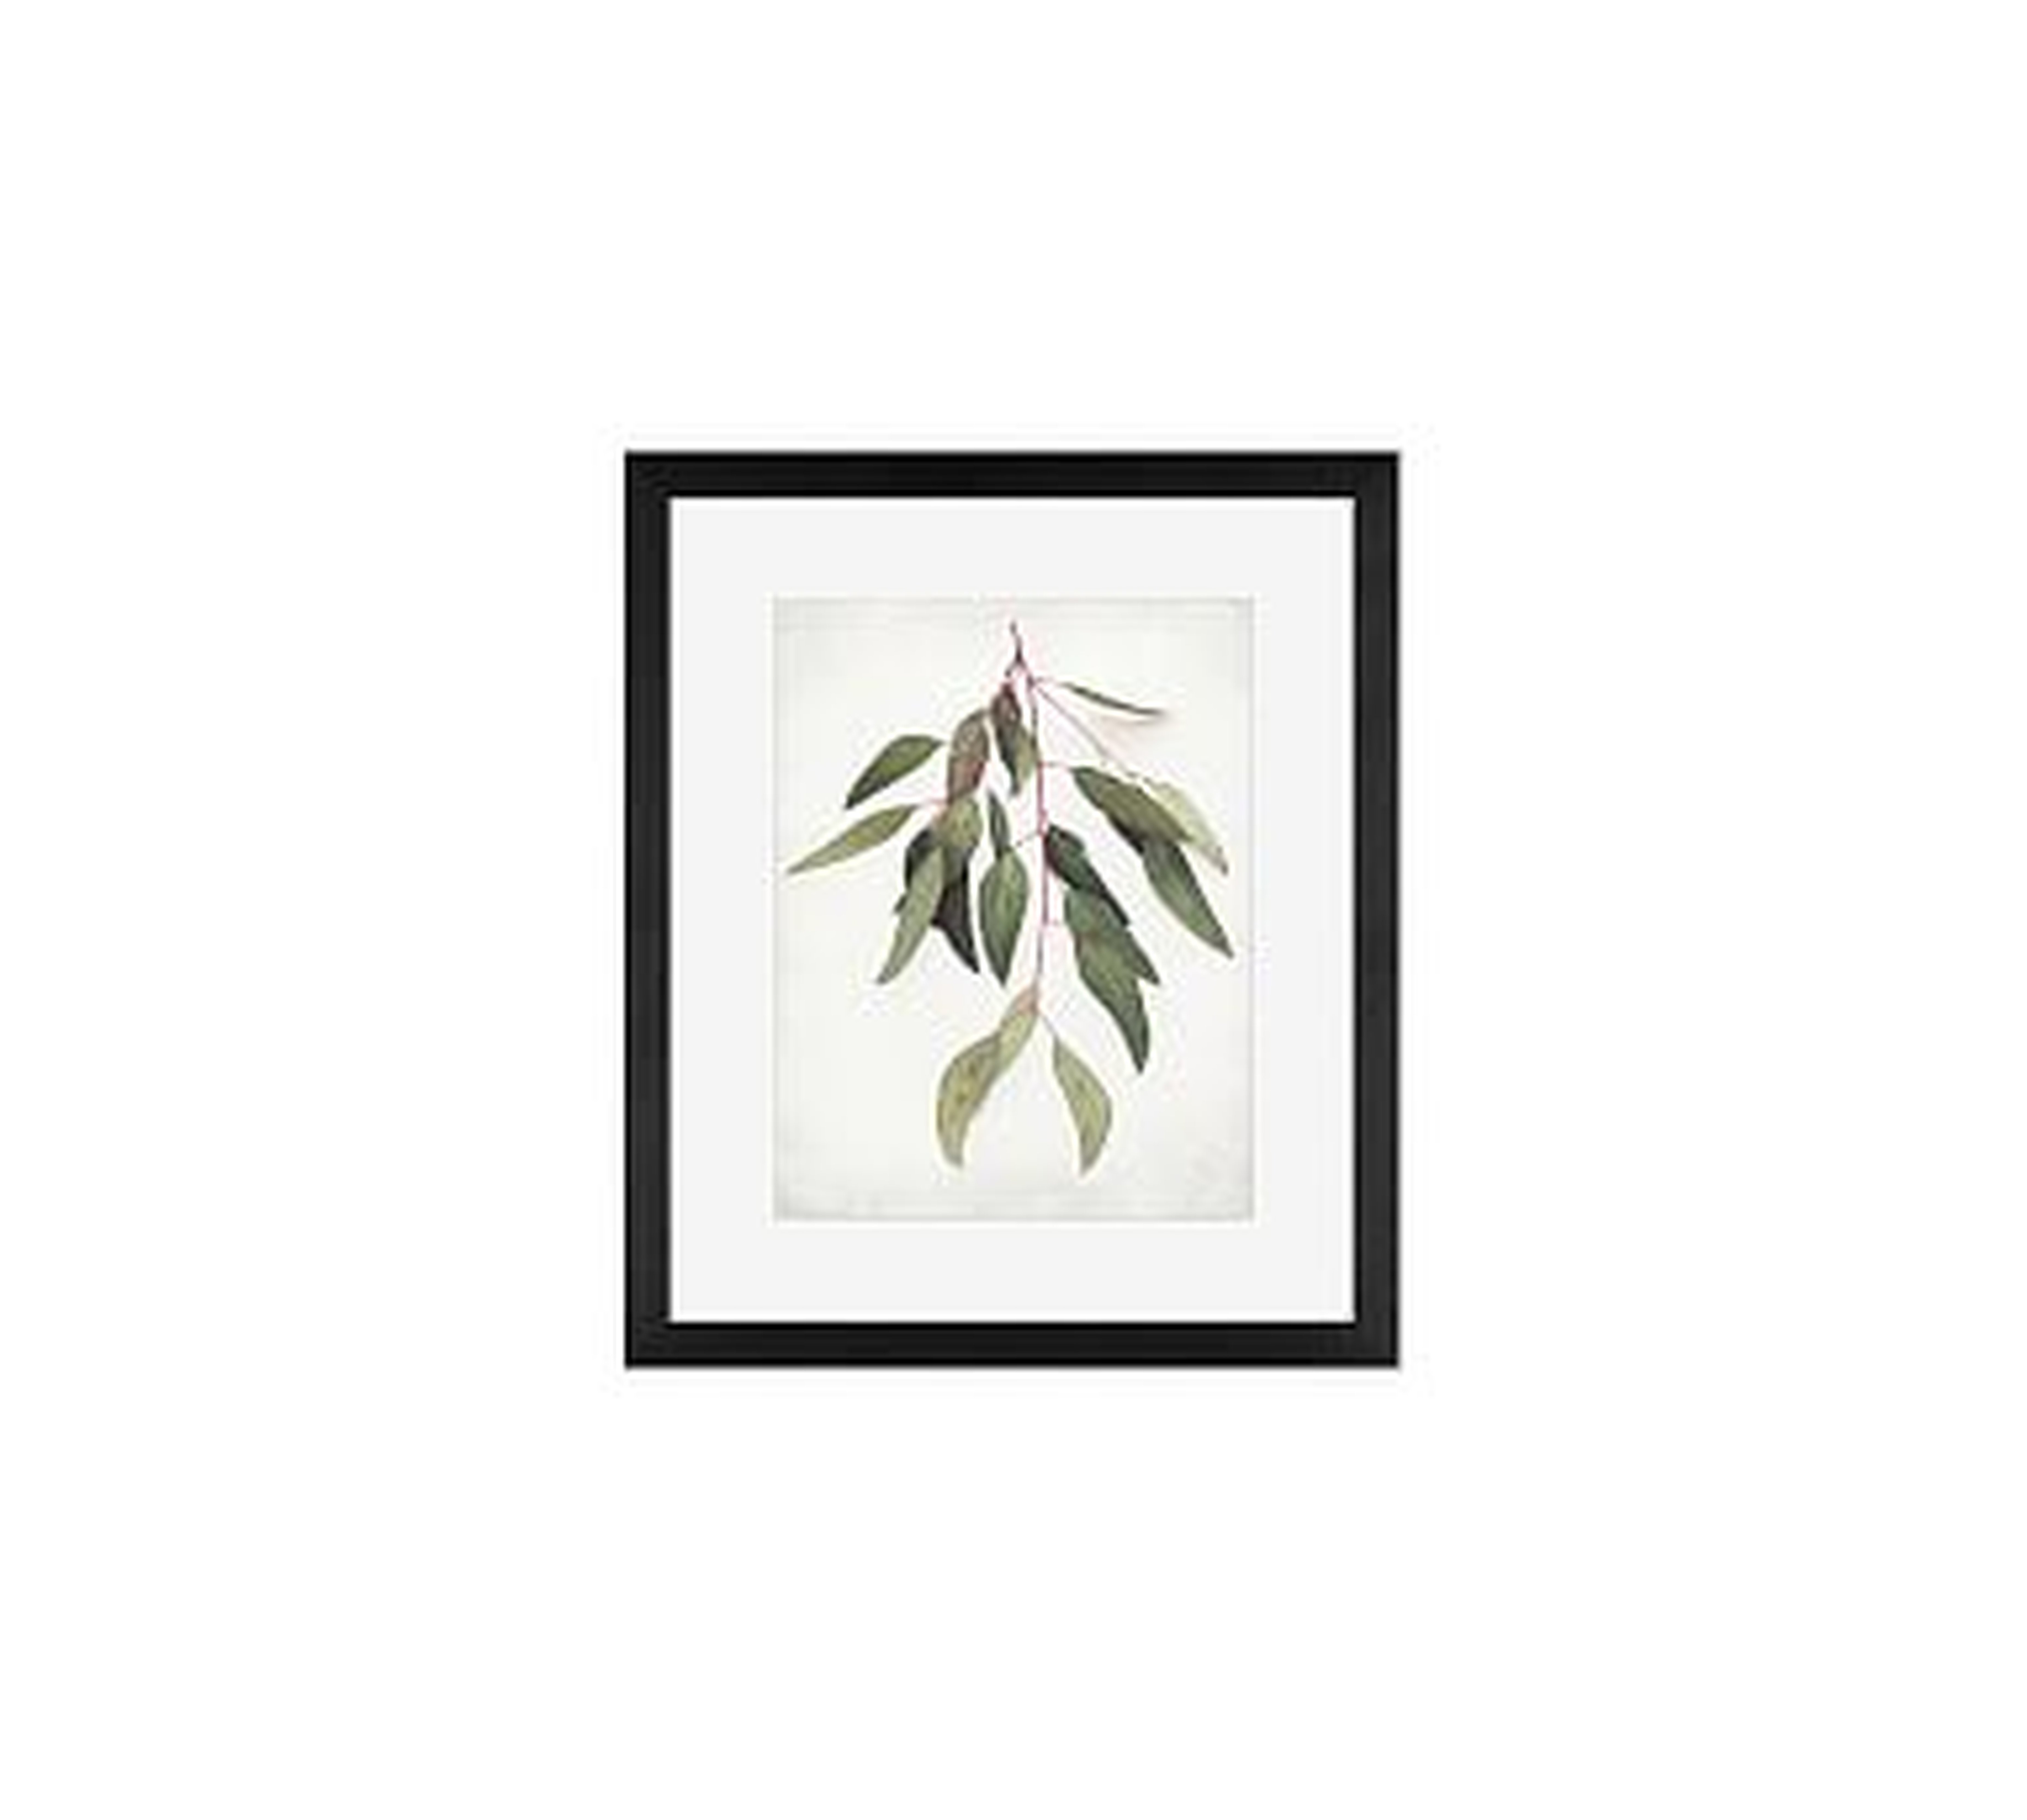 Eucalyptus Sprig Framed Print by Lupen Grainne, 13x11", Wood Gallery Frame, Black, Mat - Pottery Barn